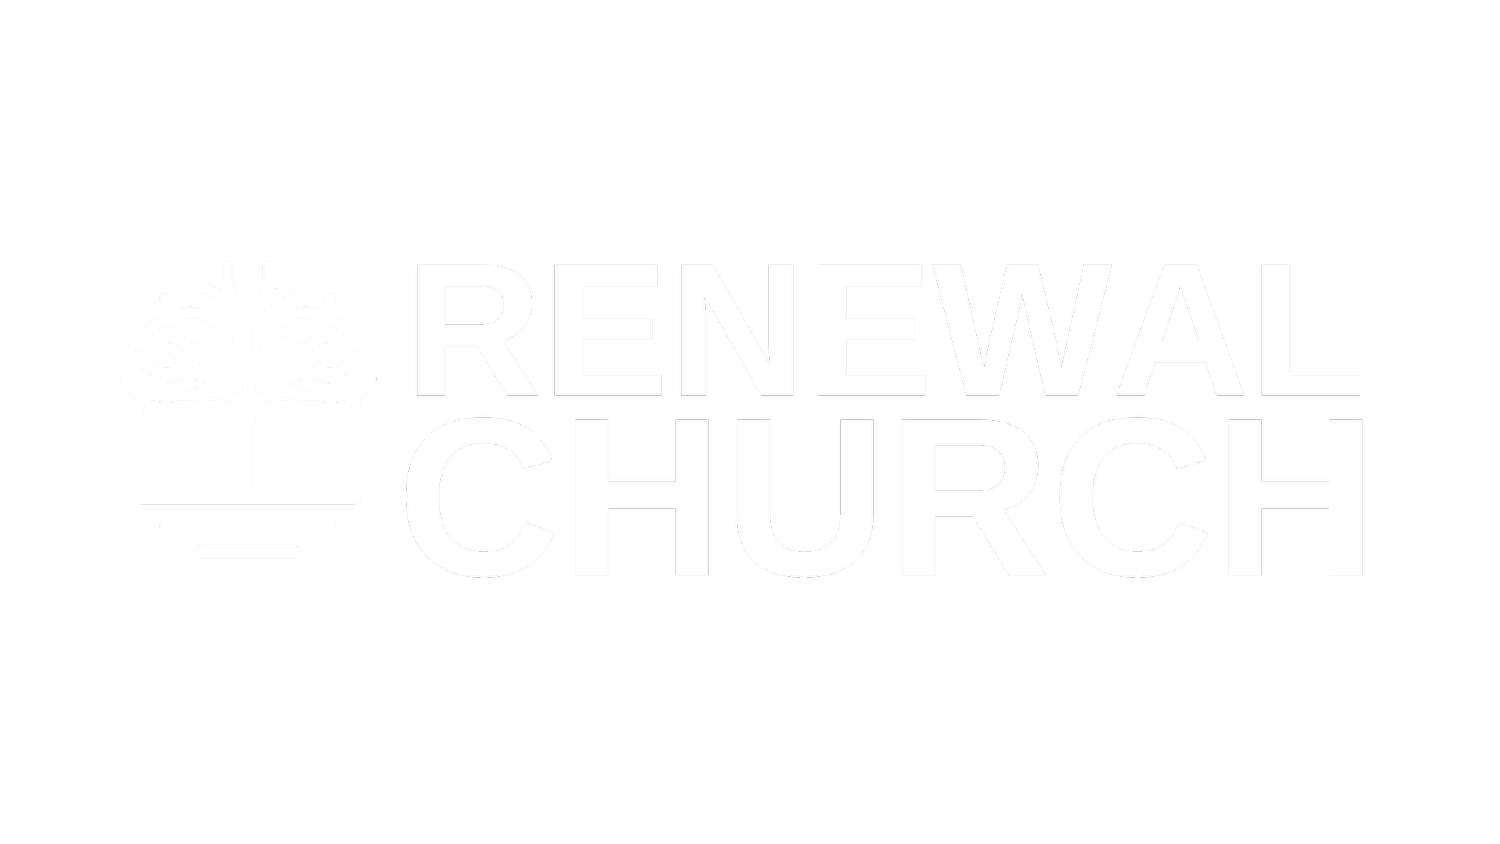 Renewal Church Boston